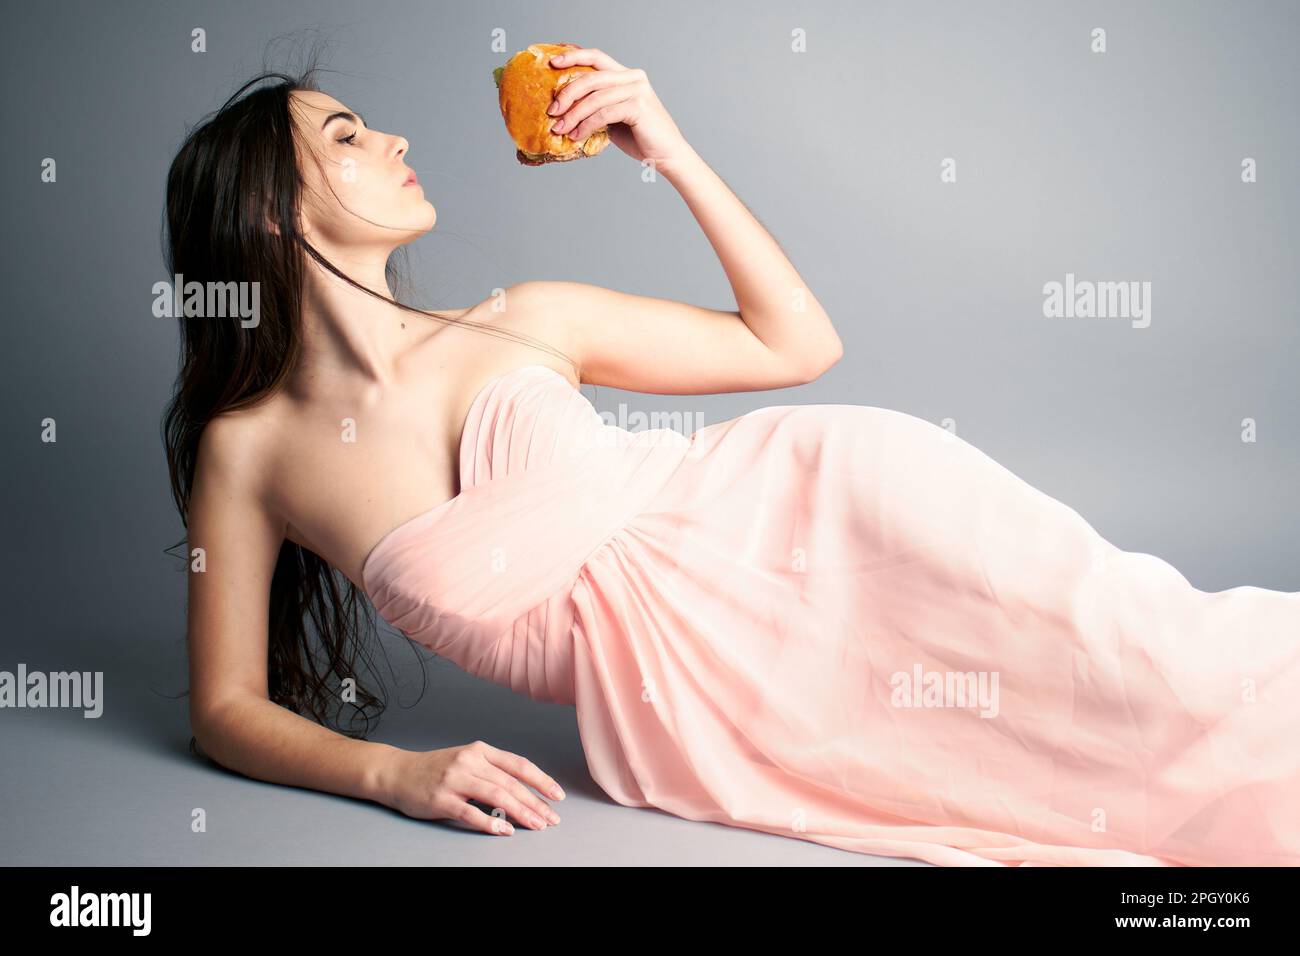 Porträt einer Frau, die einen Hamburger hält und Haare im Wind bläst, während sie sich im Ballkleid legt Stockfoto